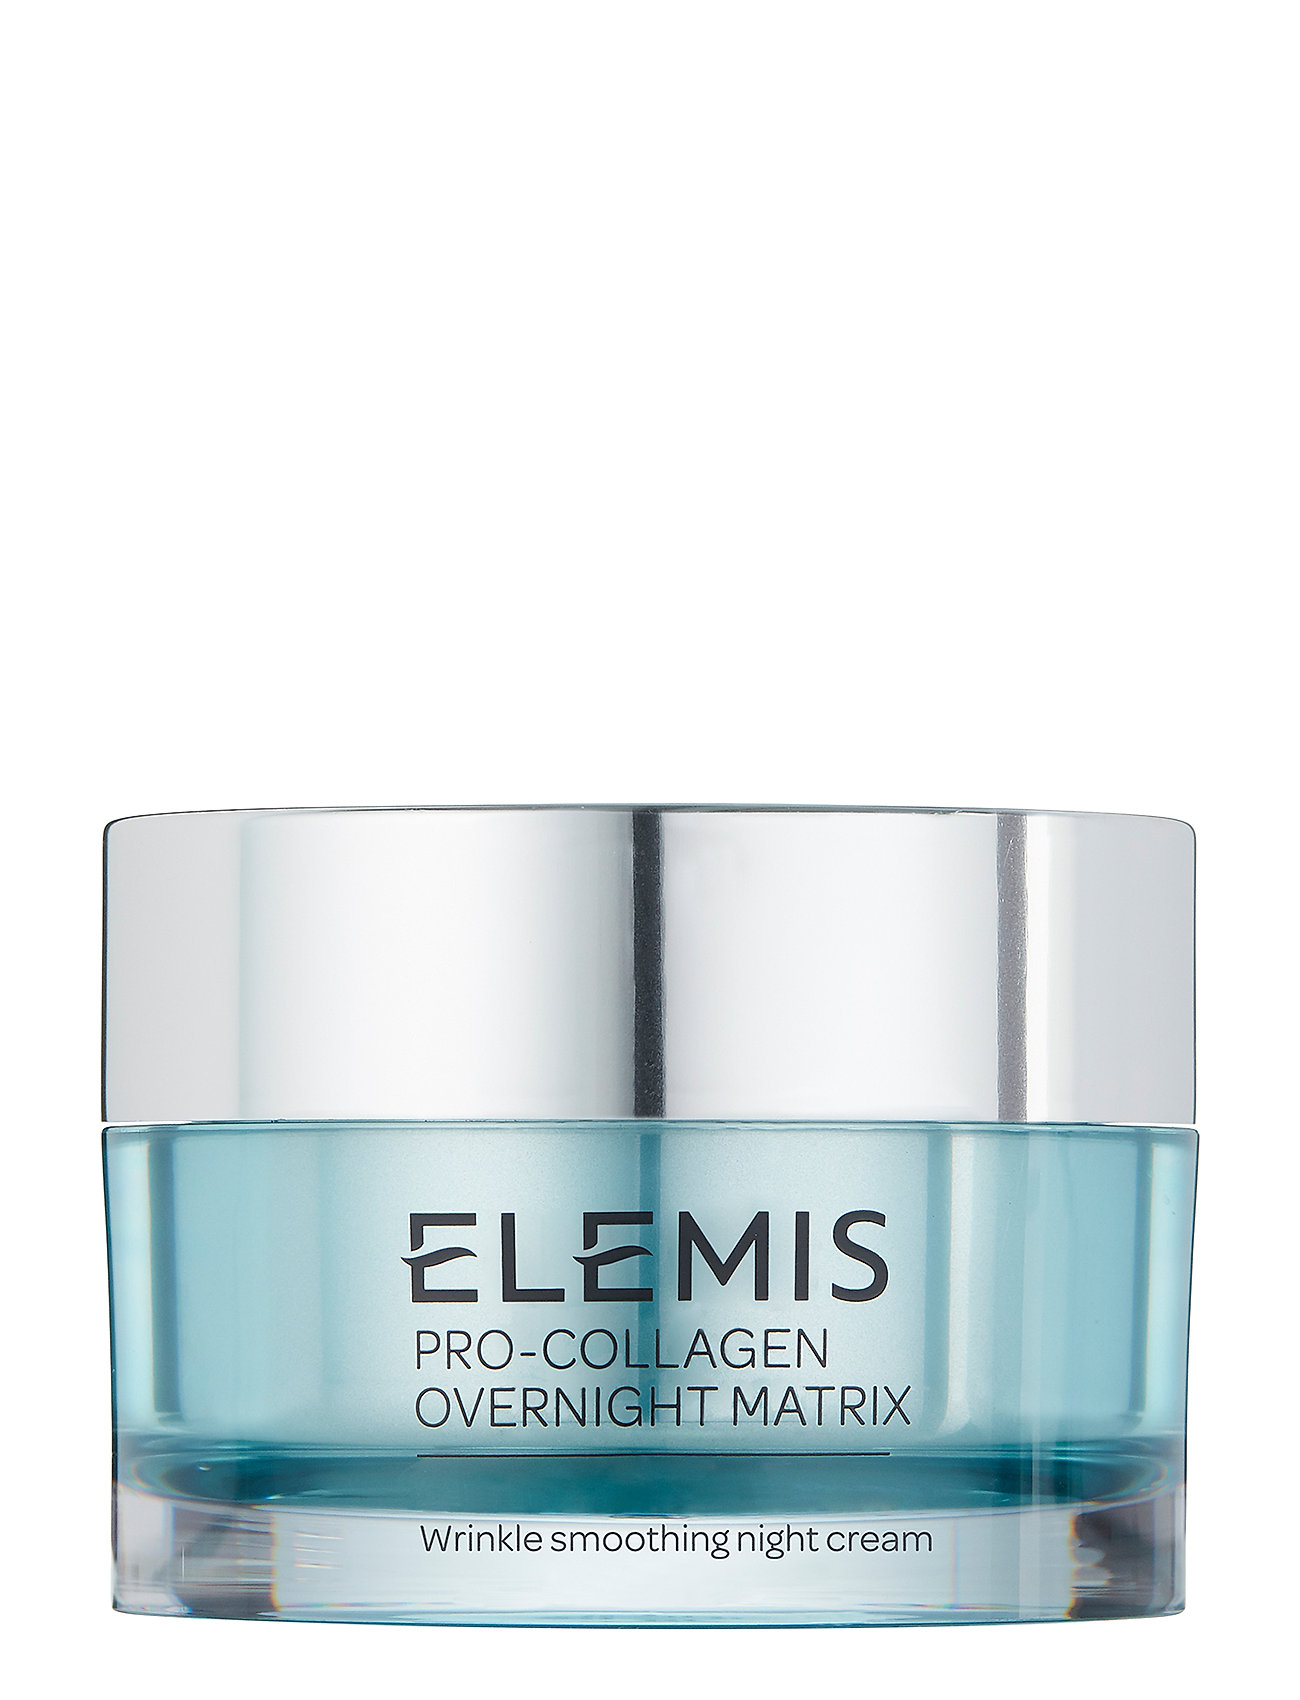 Pro-Collagen Overnight Matrix Beauty Women Skin Care Face Moisturizers Night Cream Nude Elemis